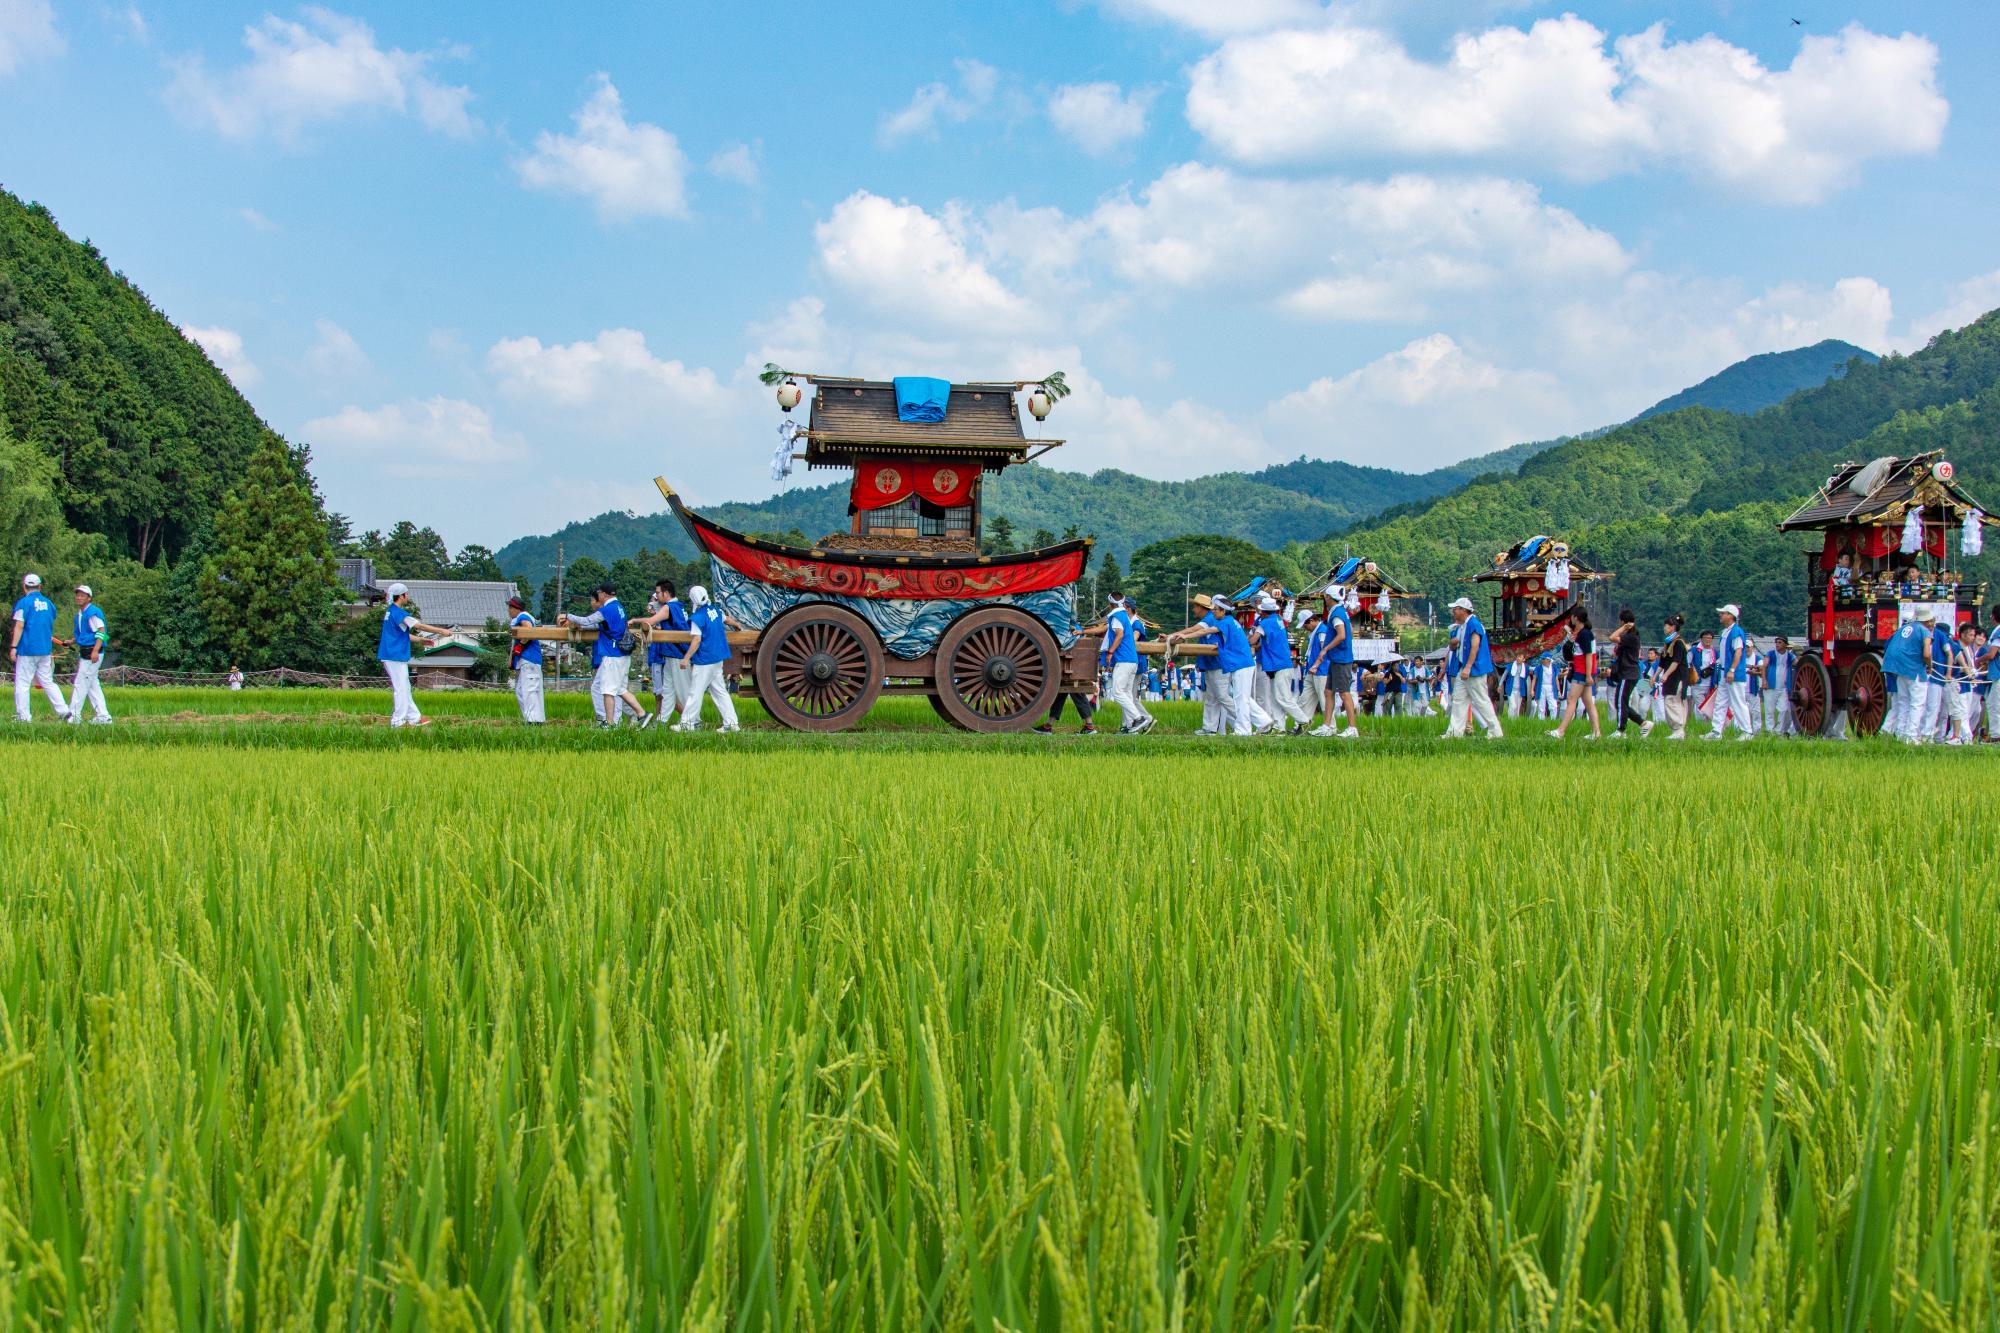 農道を、法被を着た人たちが神輿や山車をひいている。田んぼの稲は実っている。